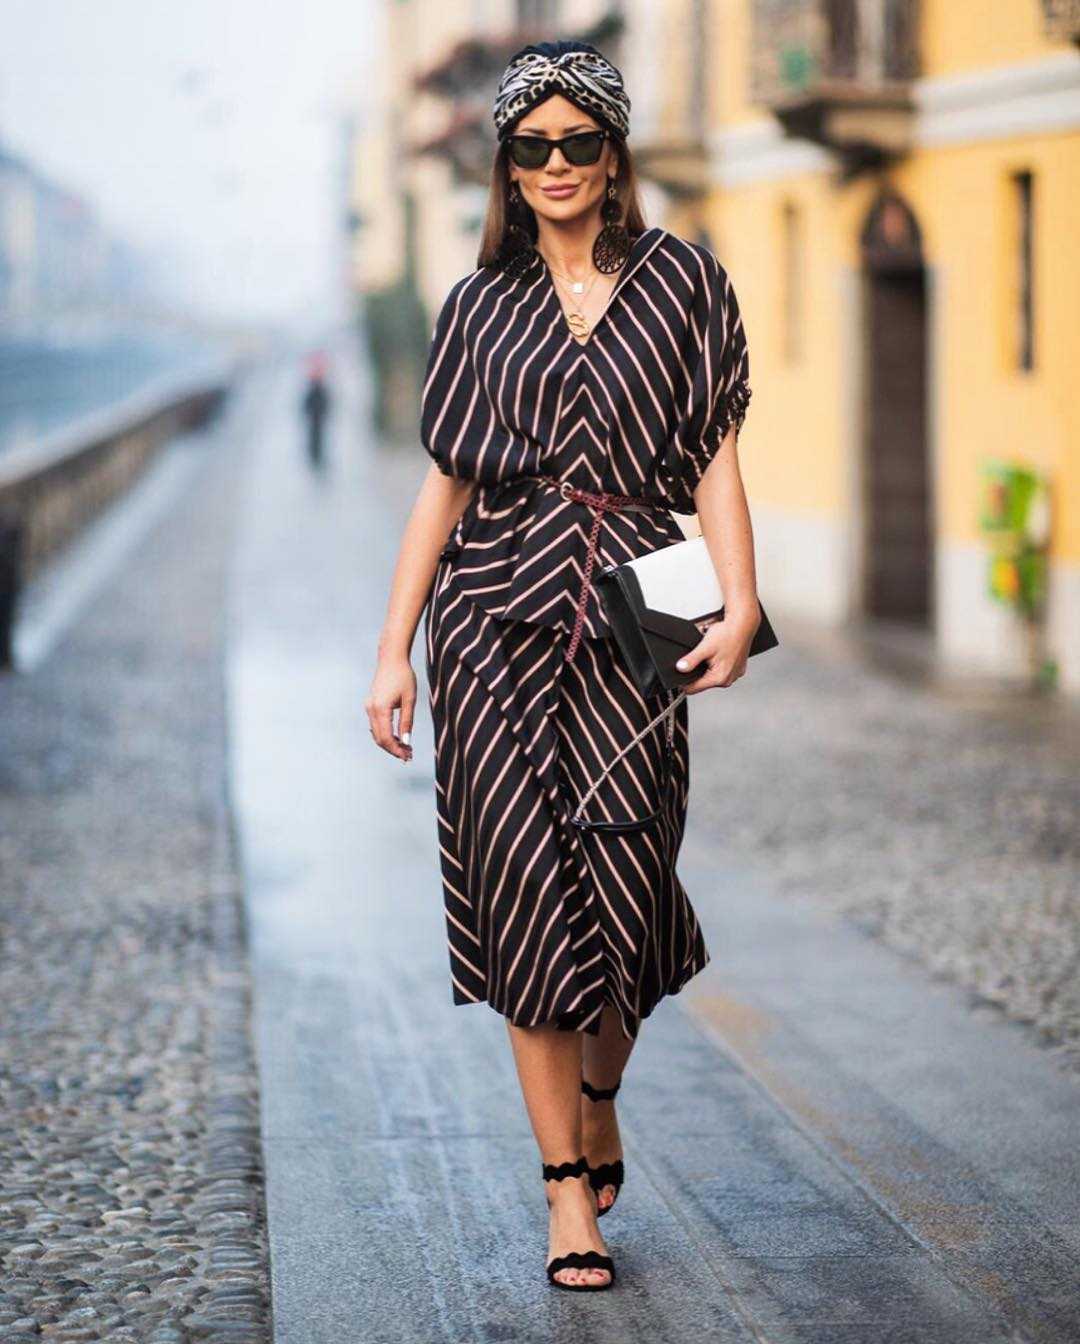 Итальянский стиль в одежде для женщин 50 лет